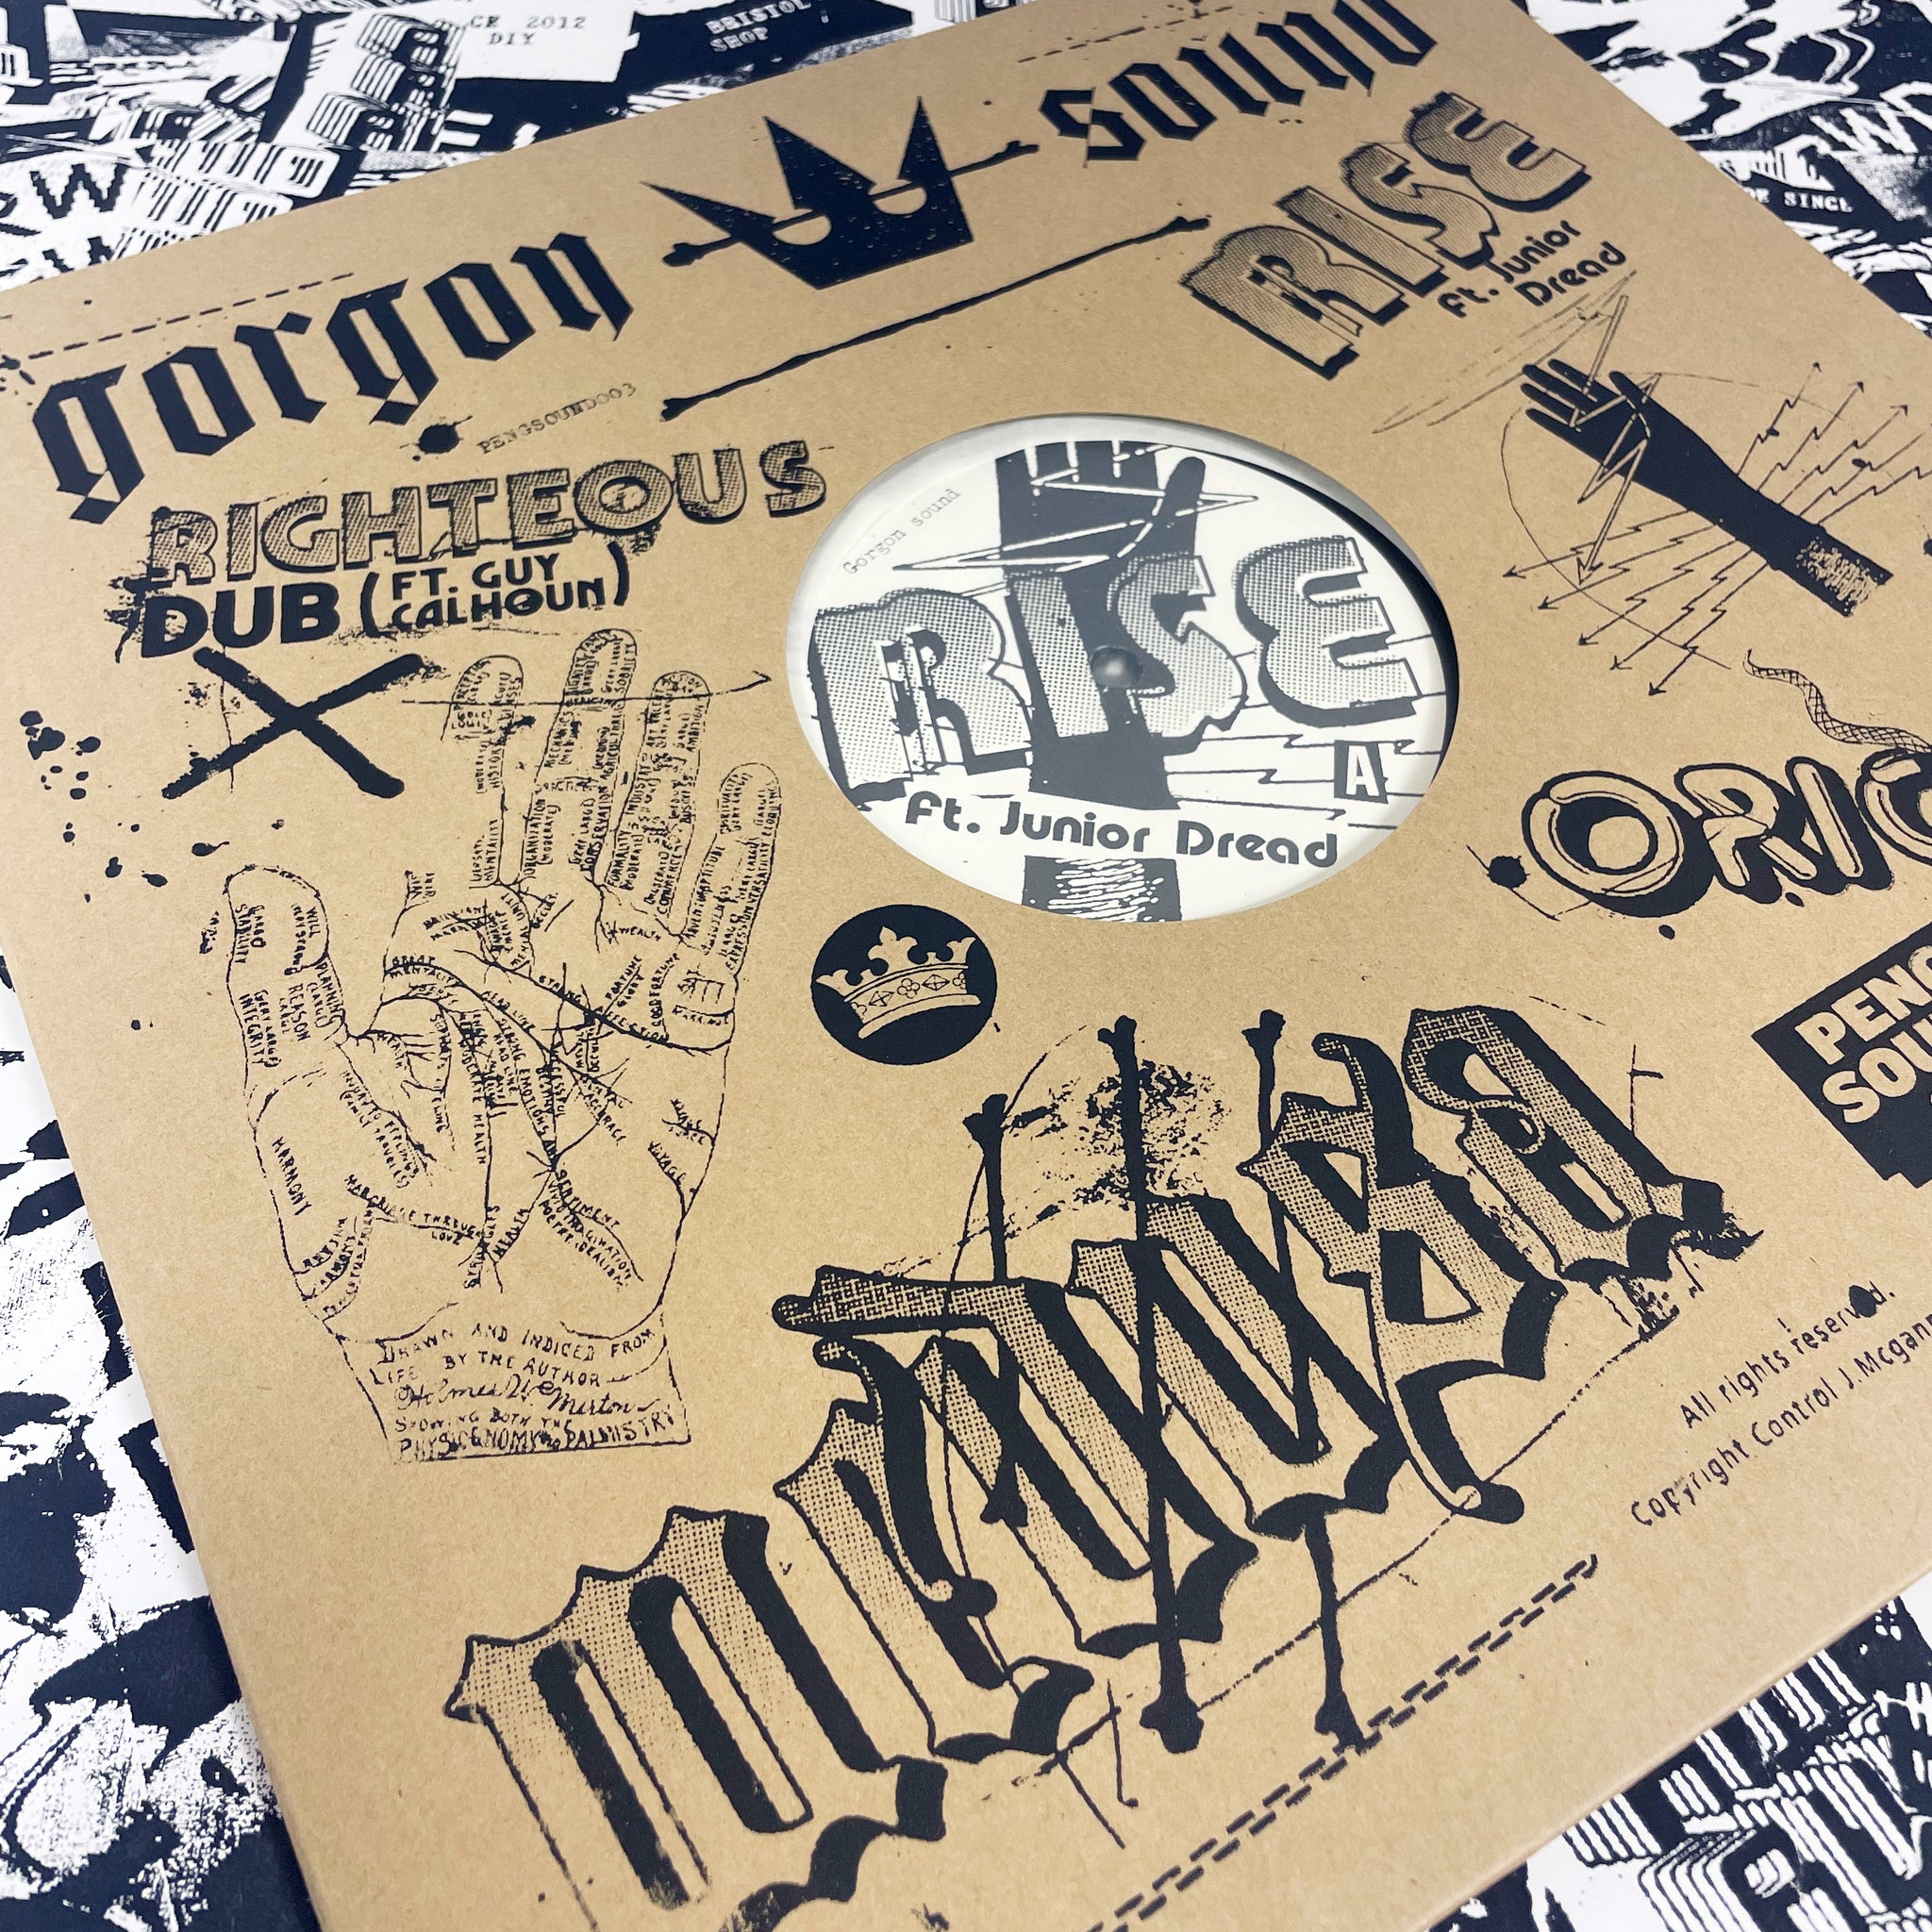 Gorgon Sound EP *Special RWDFWD Edition Repress*